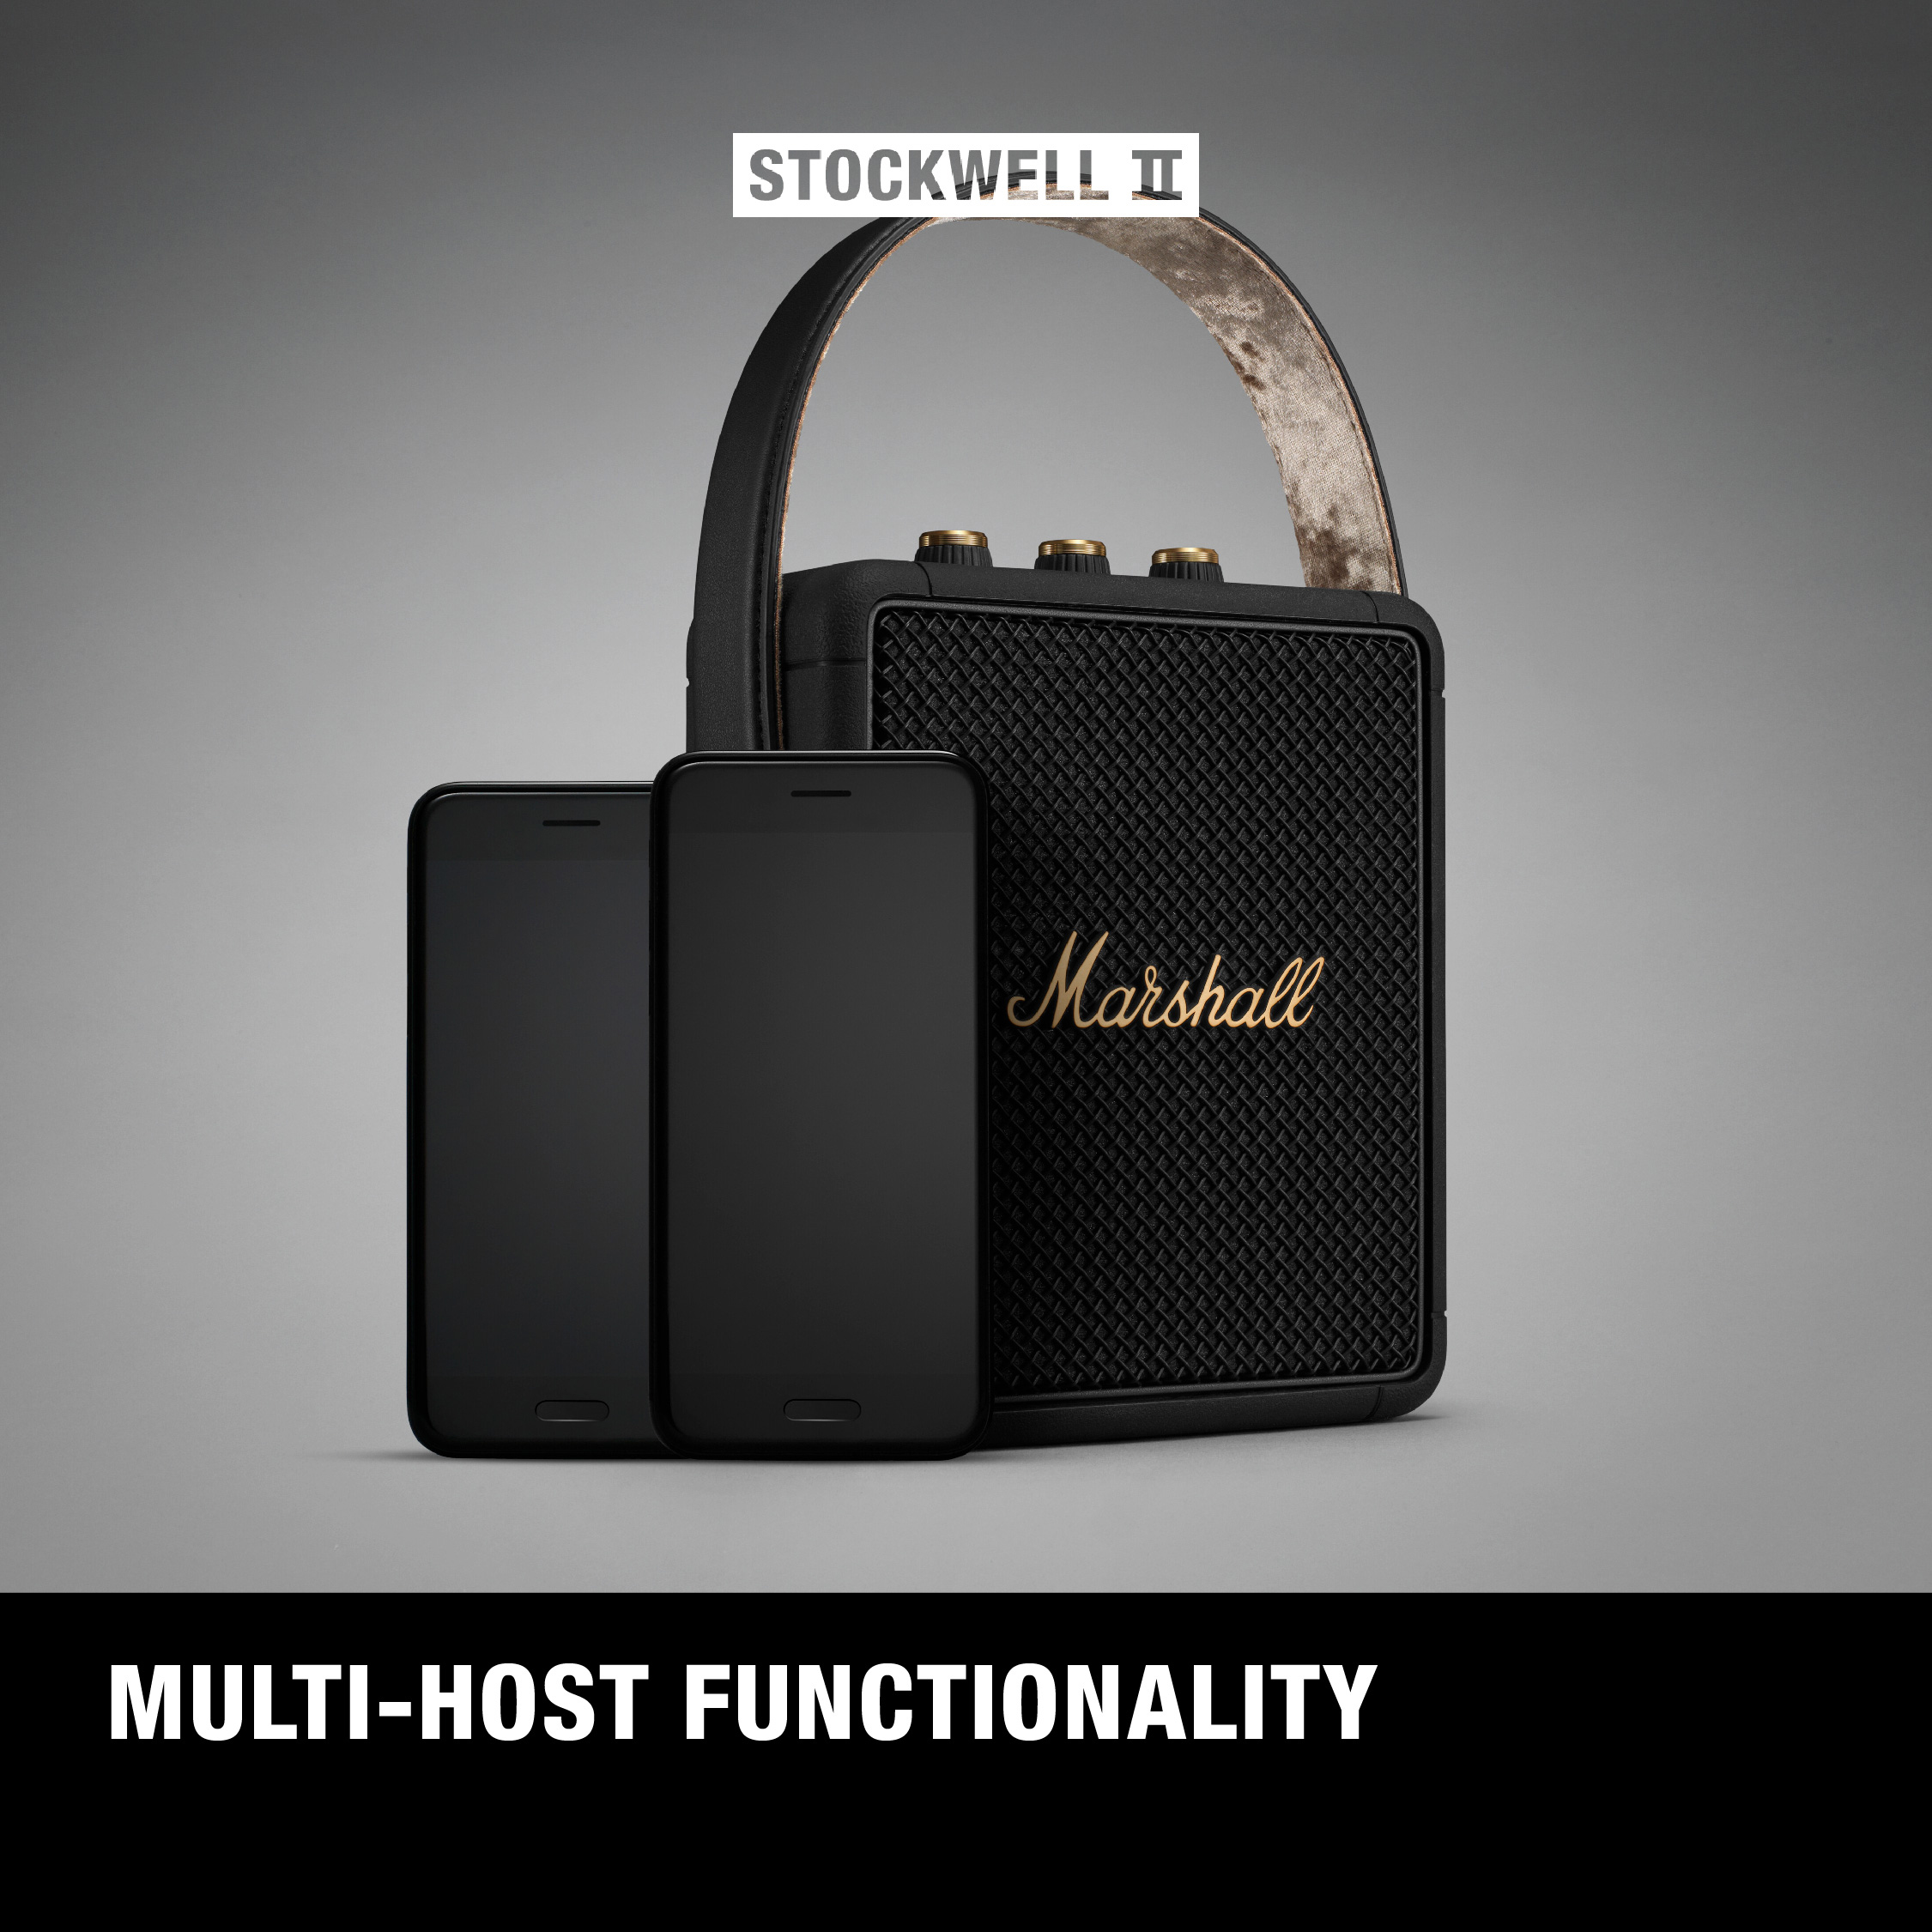 Loa Marshall Stockwell II Portable + 20 hours battery life - Hàng chính hãng